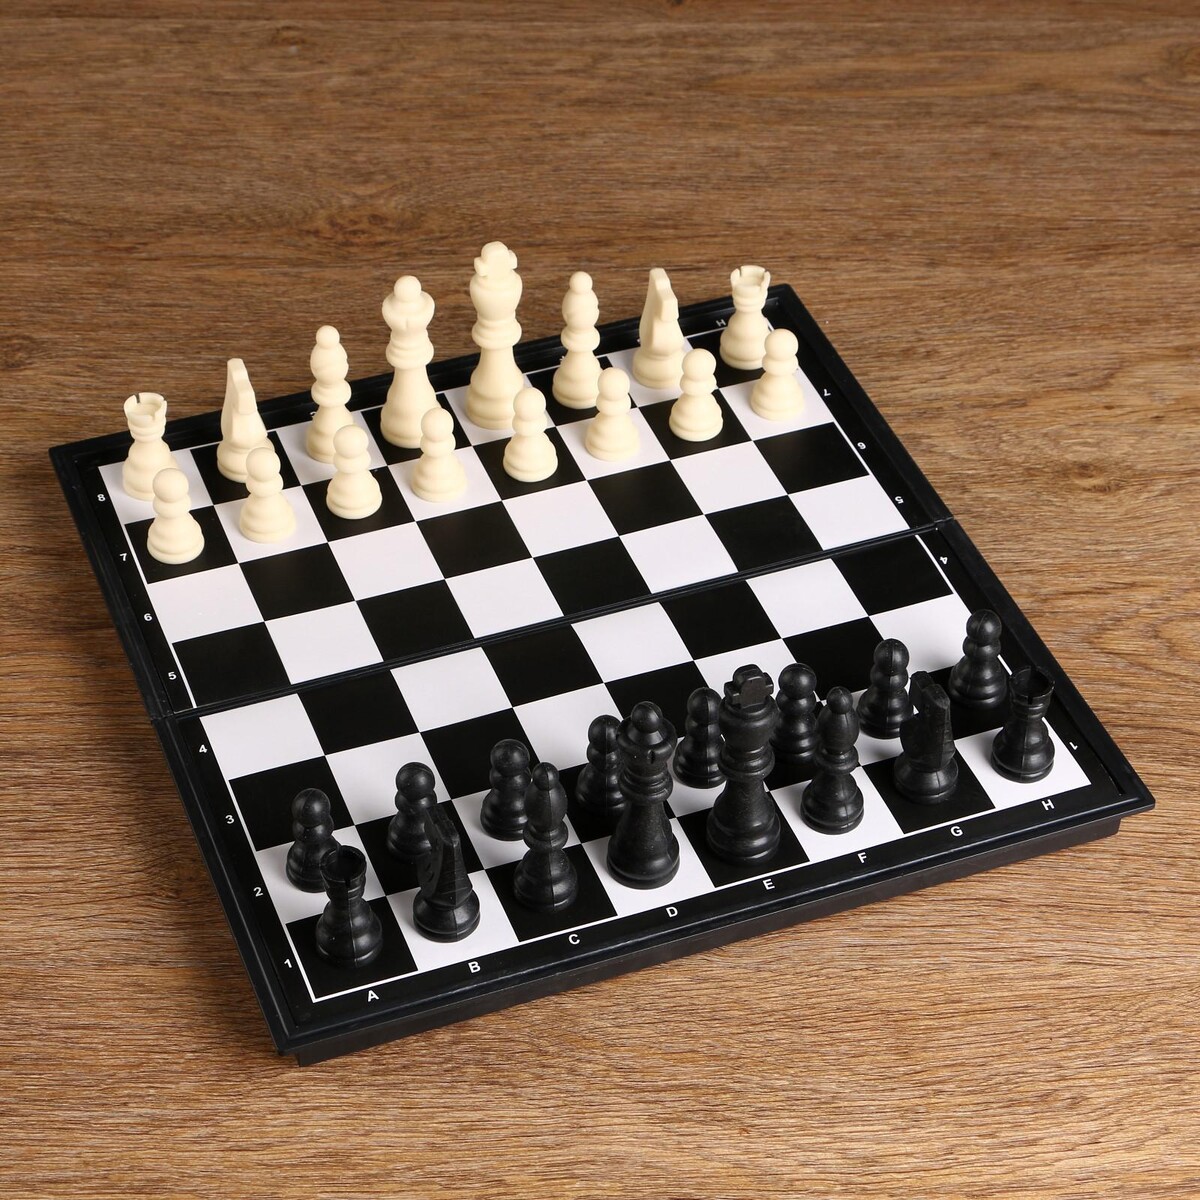 Шахматы, доска пластик 31 х 31 см, король 8 см, пешка 3.8 см шахматы деревянные гроссмейстерские турнирные король h 10 5 см пешка h 5 3 см